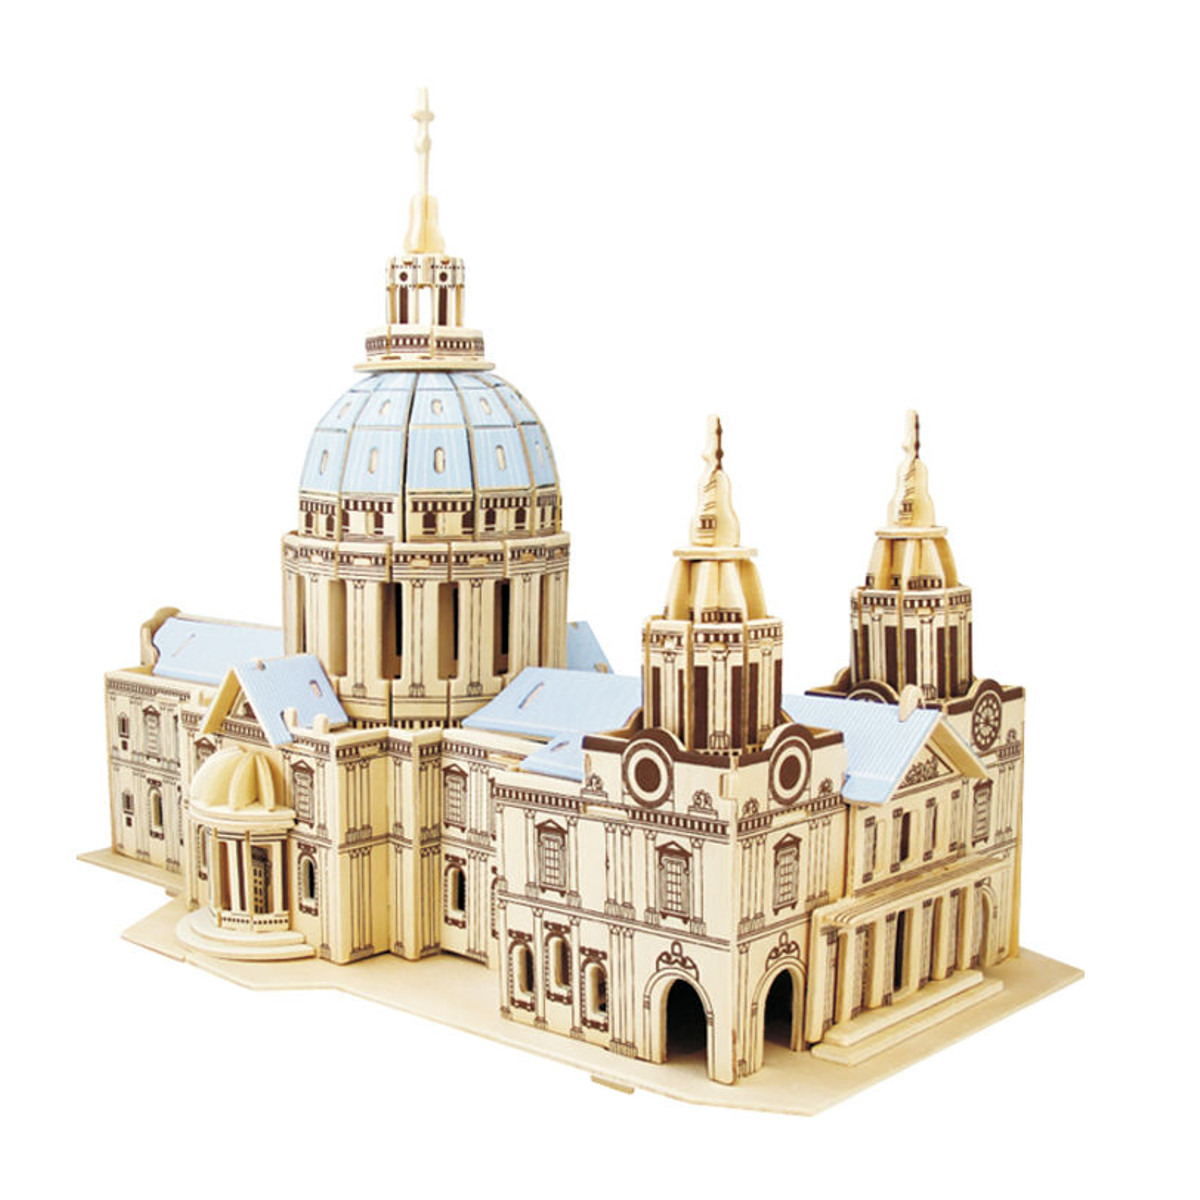 

3D Деревянный Собор Святого Павла Модель Развивающие Игрушки Головоломки Для Детей Для взрослых Хобби Подарок